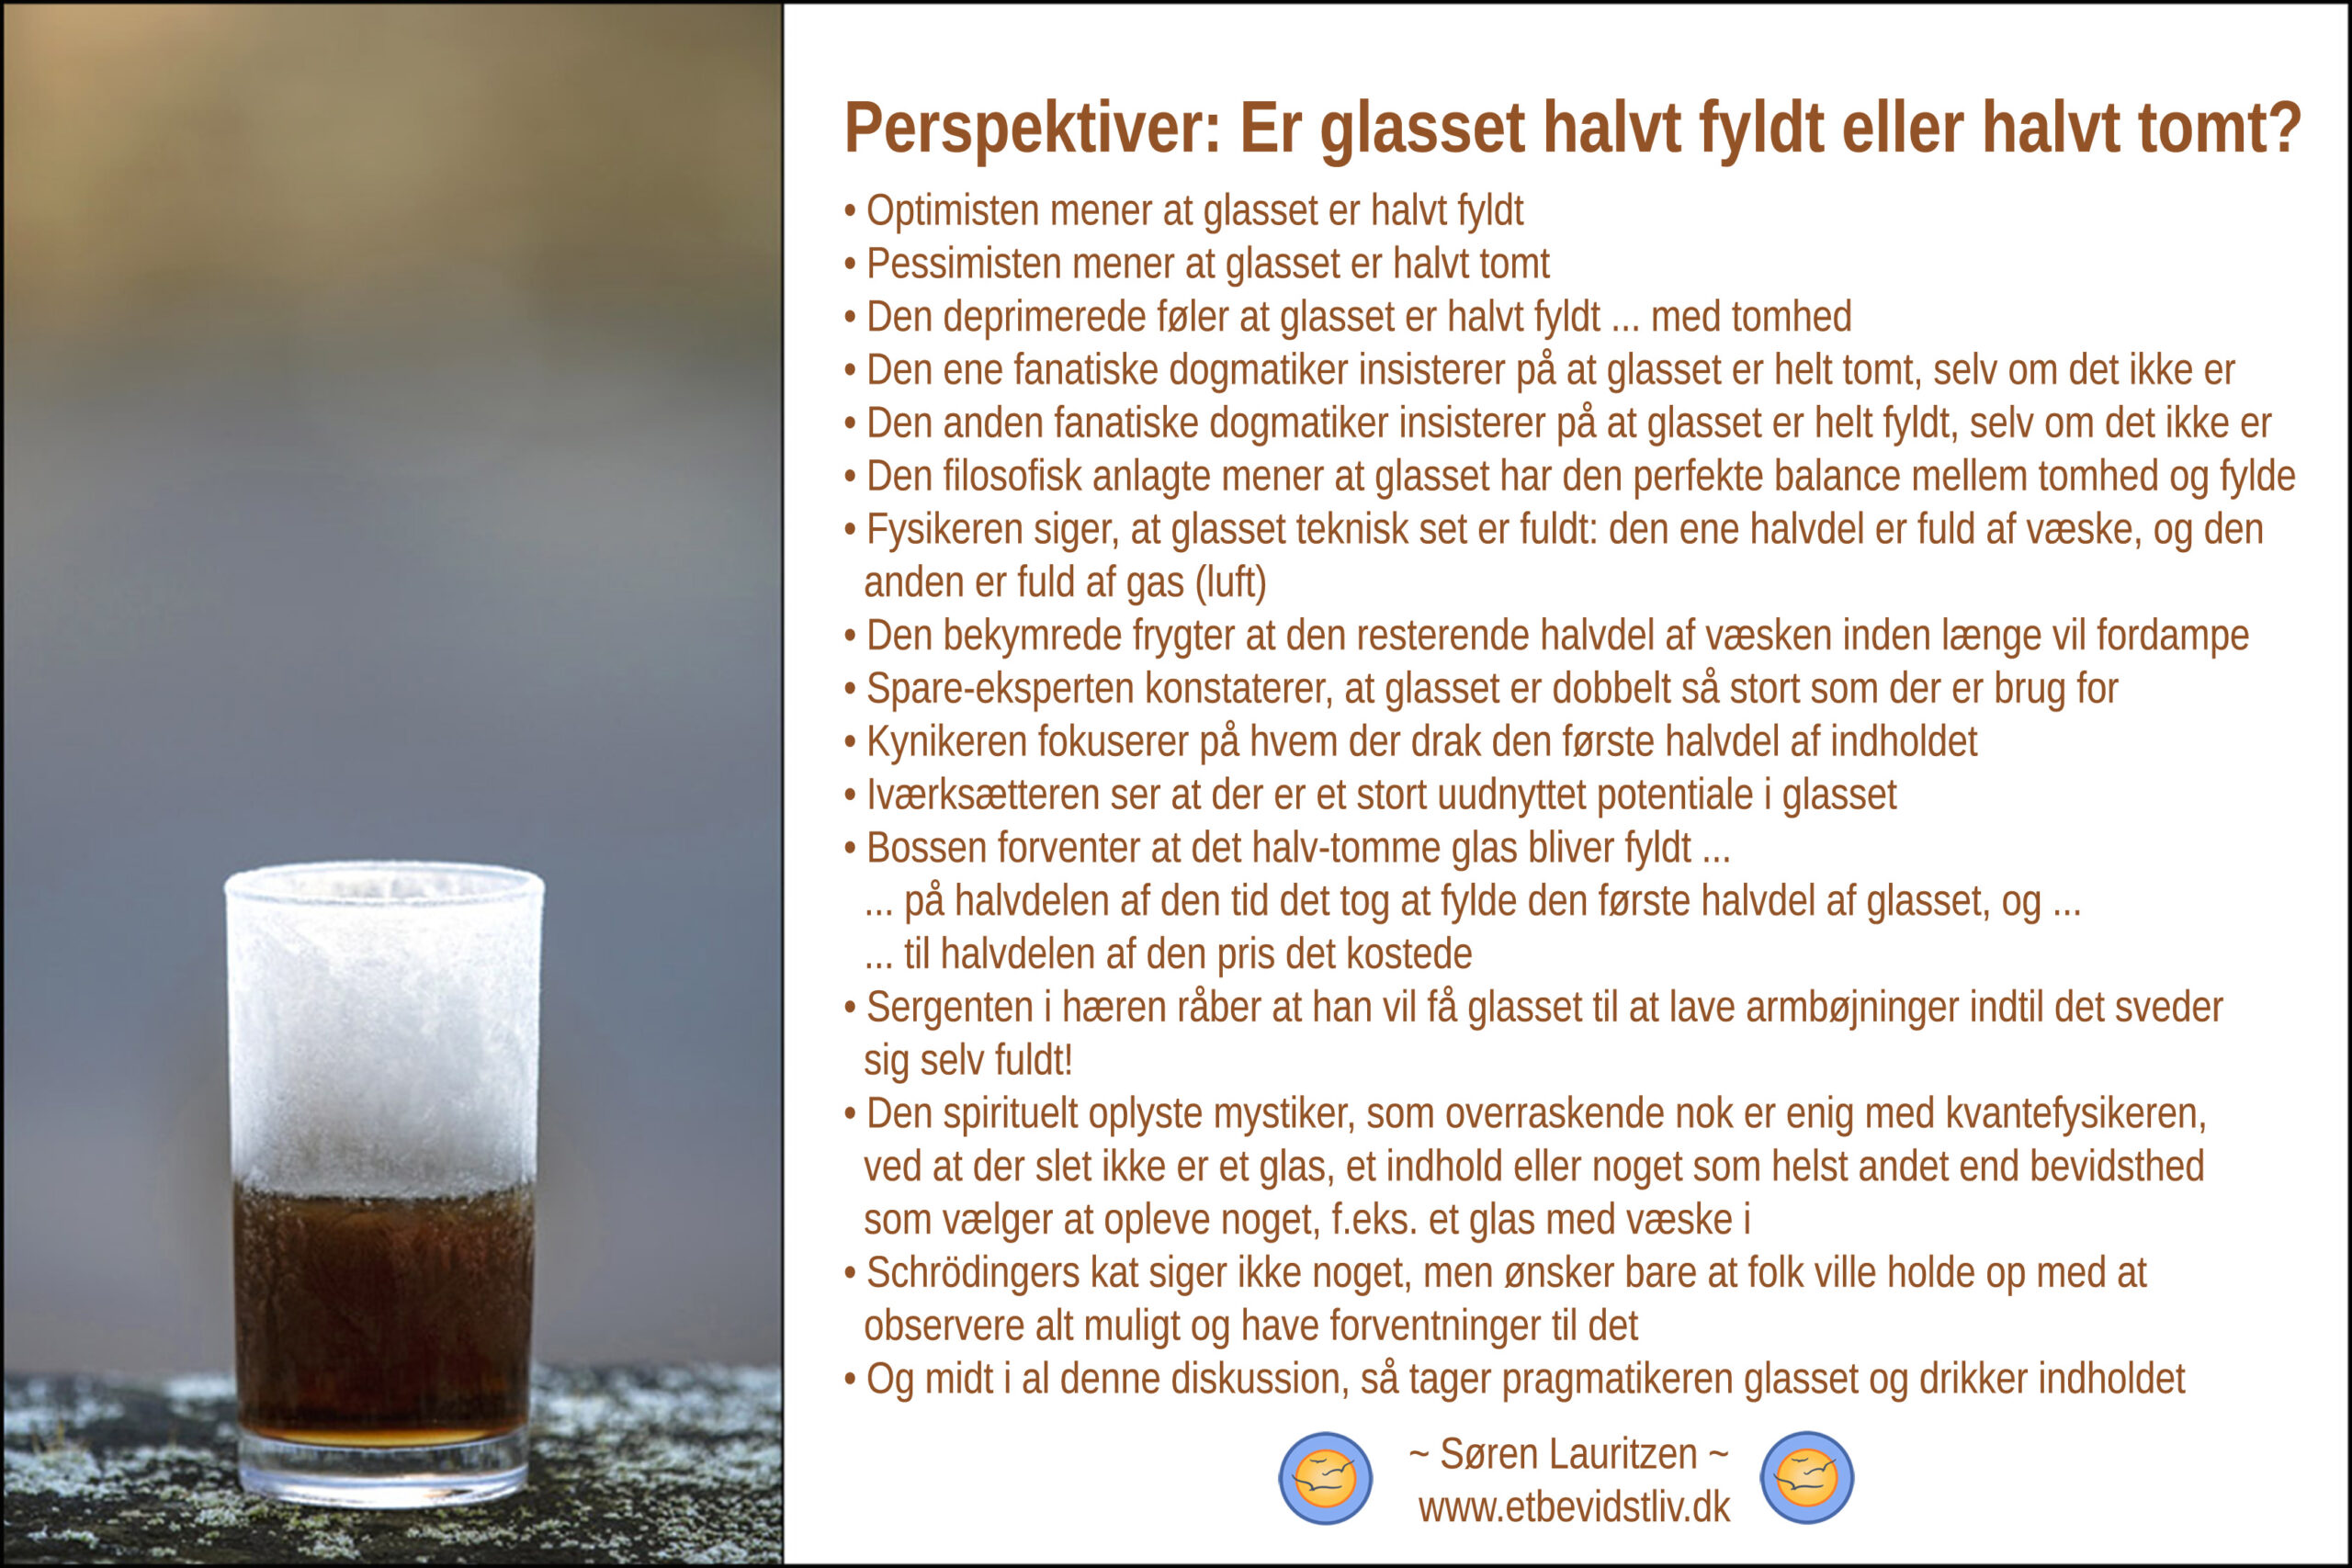 Foto: Frostbelagt glas med væske i. Tekst: Fortælling om perspektiver på hvorvidt galsset er halvt fyldt eller halvt tomt. (Søren Lauritzen)